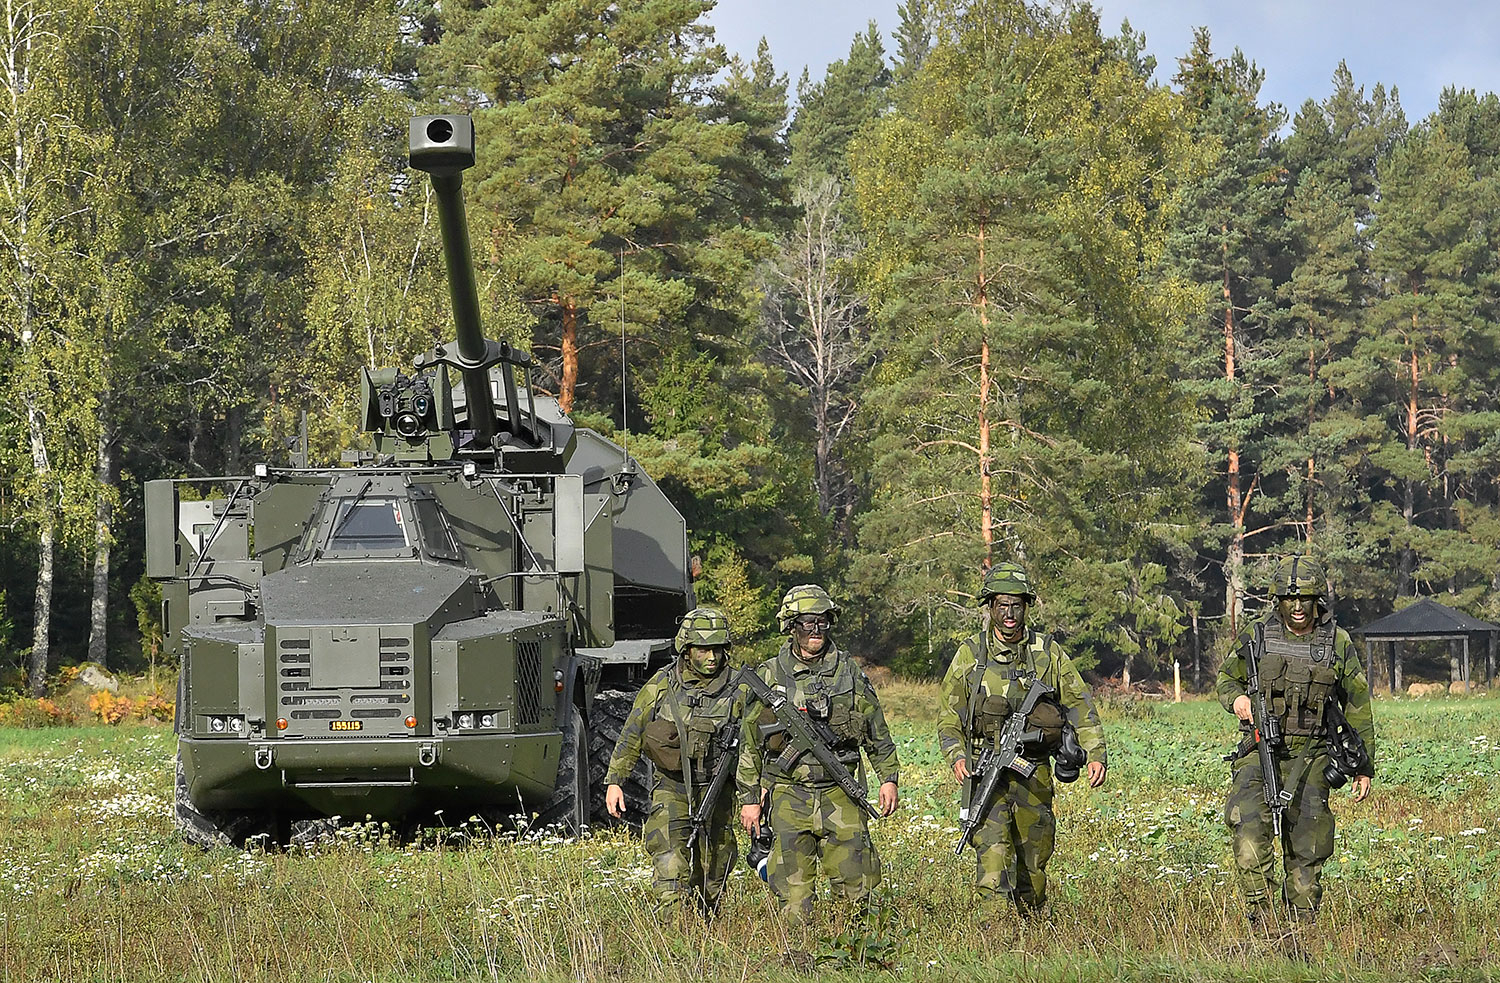 Archer er et svenskprodusert selvdrevet artillerisystem. Den svenske regjeringen gir forsvaret i oppdrag å forberede leveranser av artillerisystemet til Ukraina. 